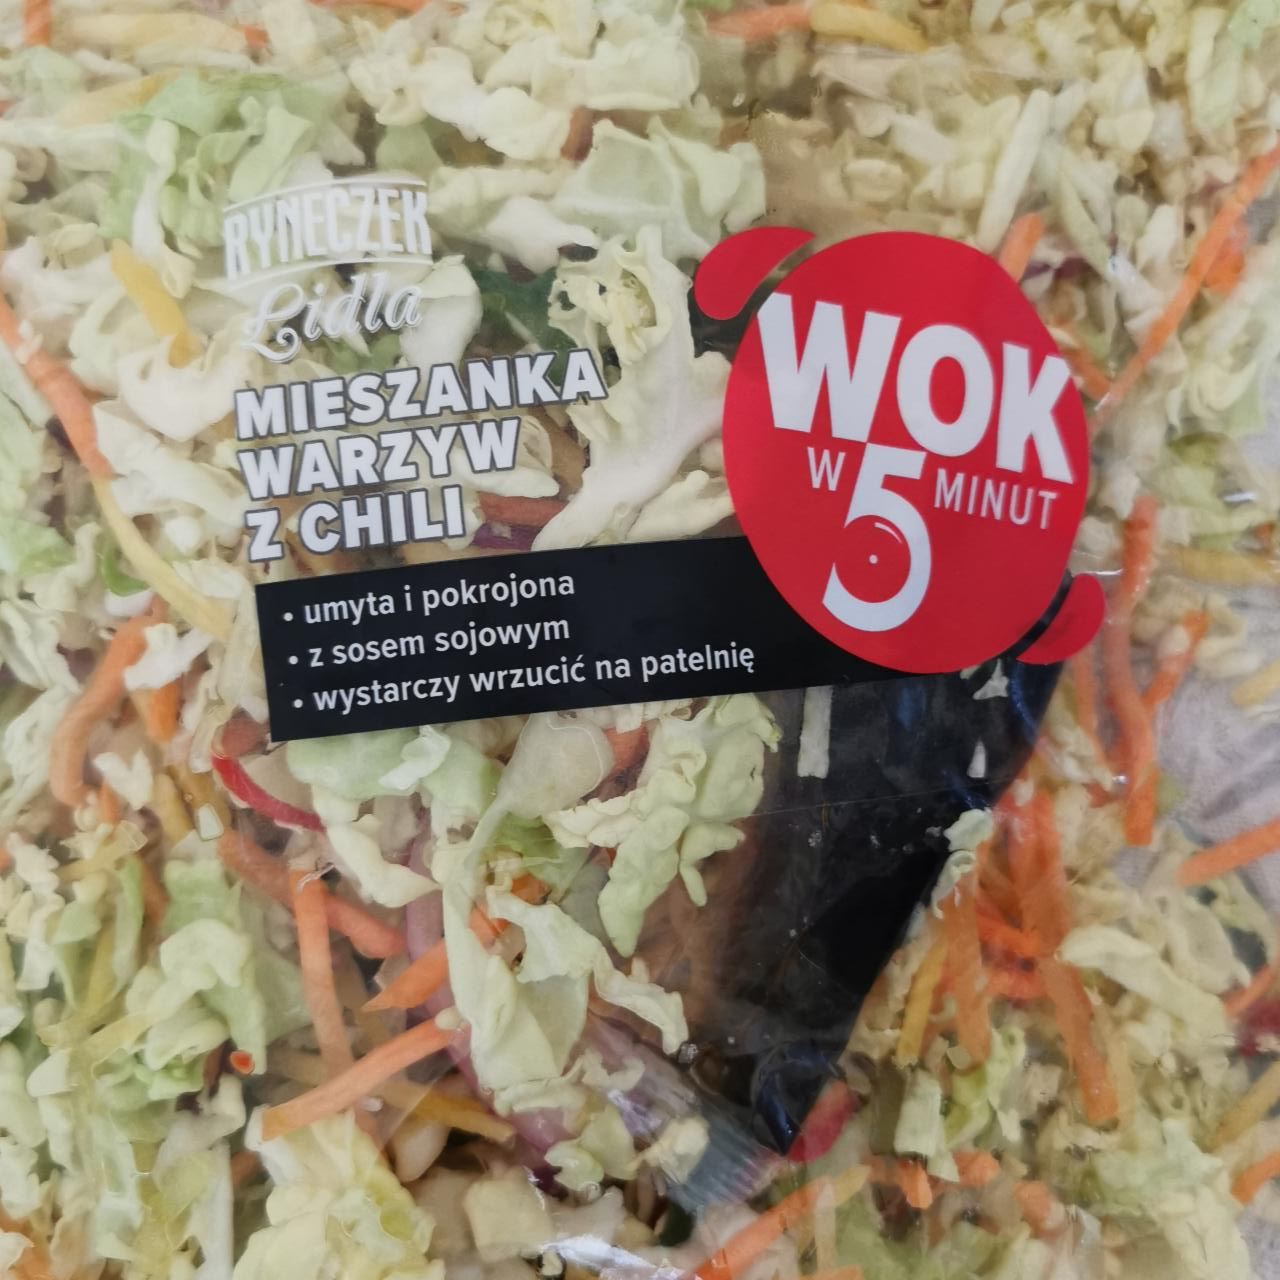 Fotografie - Mieszanka warzyw z chili Wok w 5 minut Ryneczek Lidla